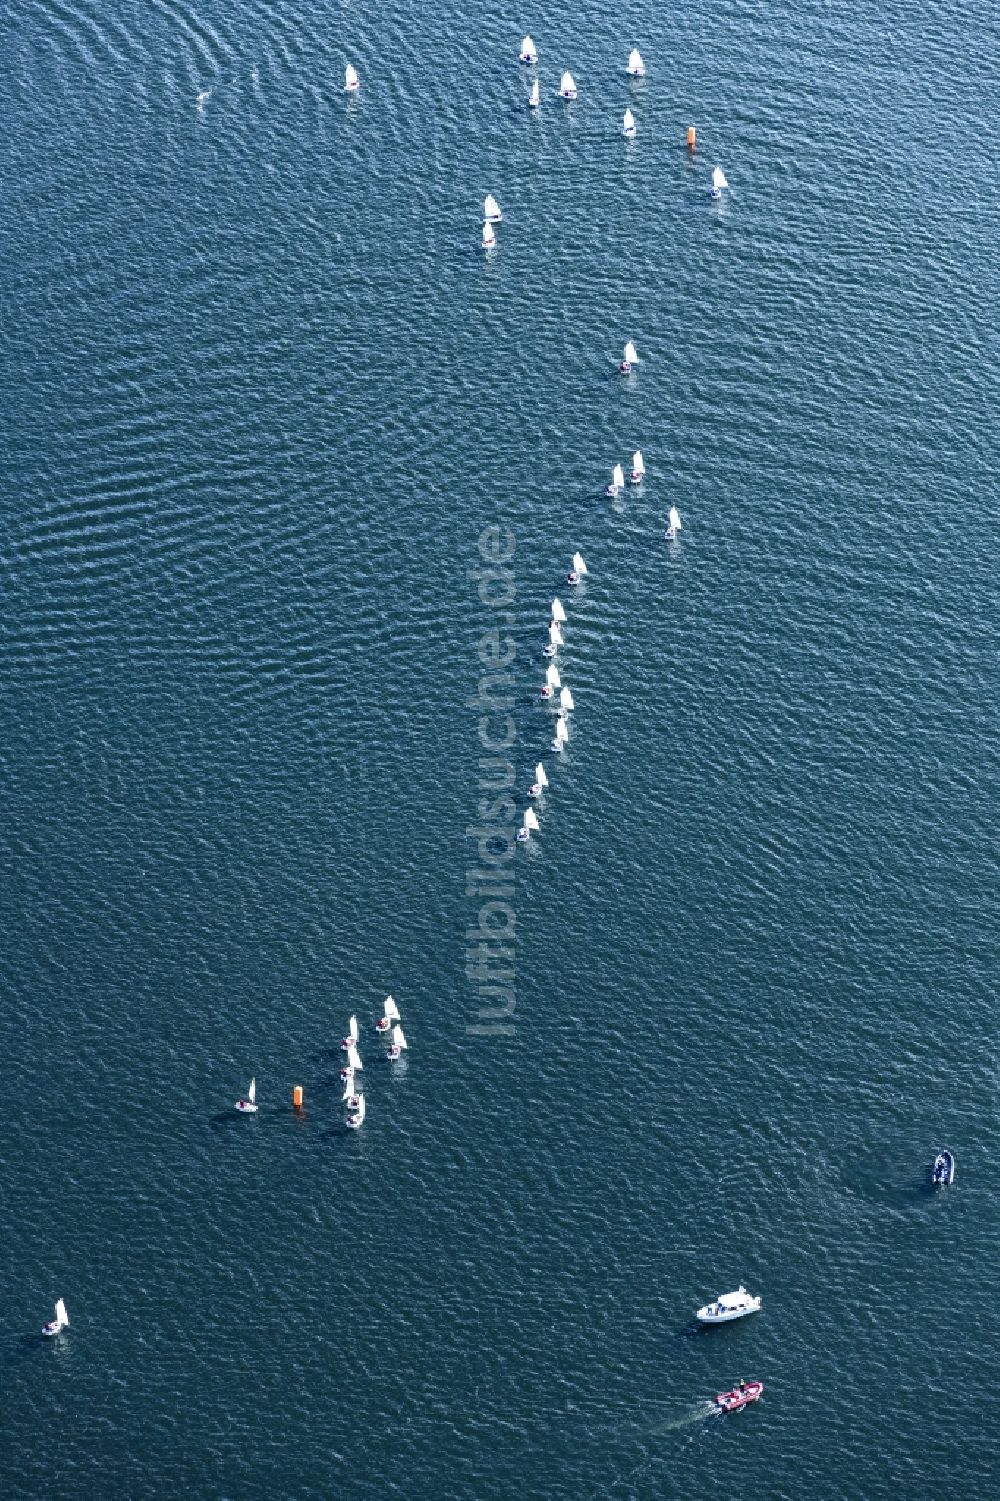 Luftaufnahme Seeon-Seebruck - Sportboot - Segelschiff in Fahrt bei einer Segelregatta auf dem Chiemsee in Seeon-Seebruck im Bundesland Bayern, Deutschland